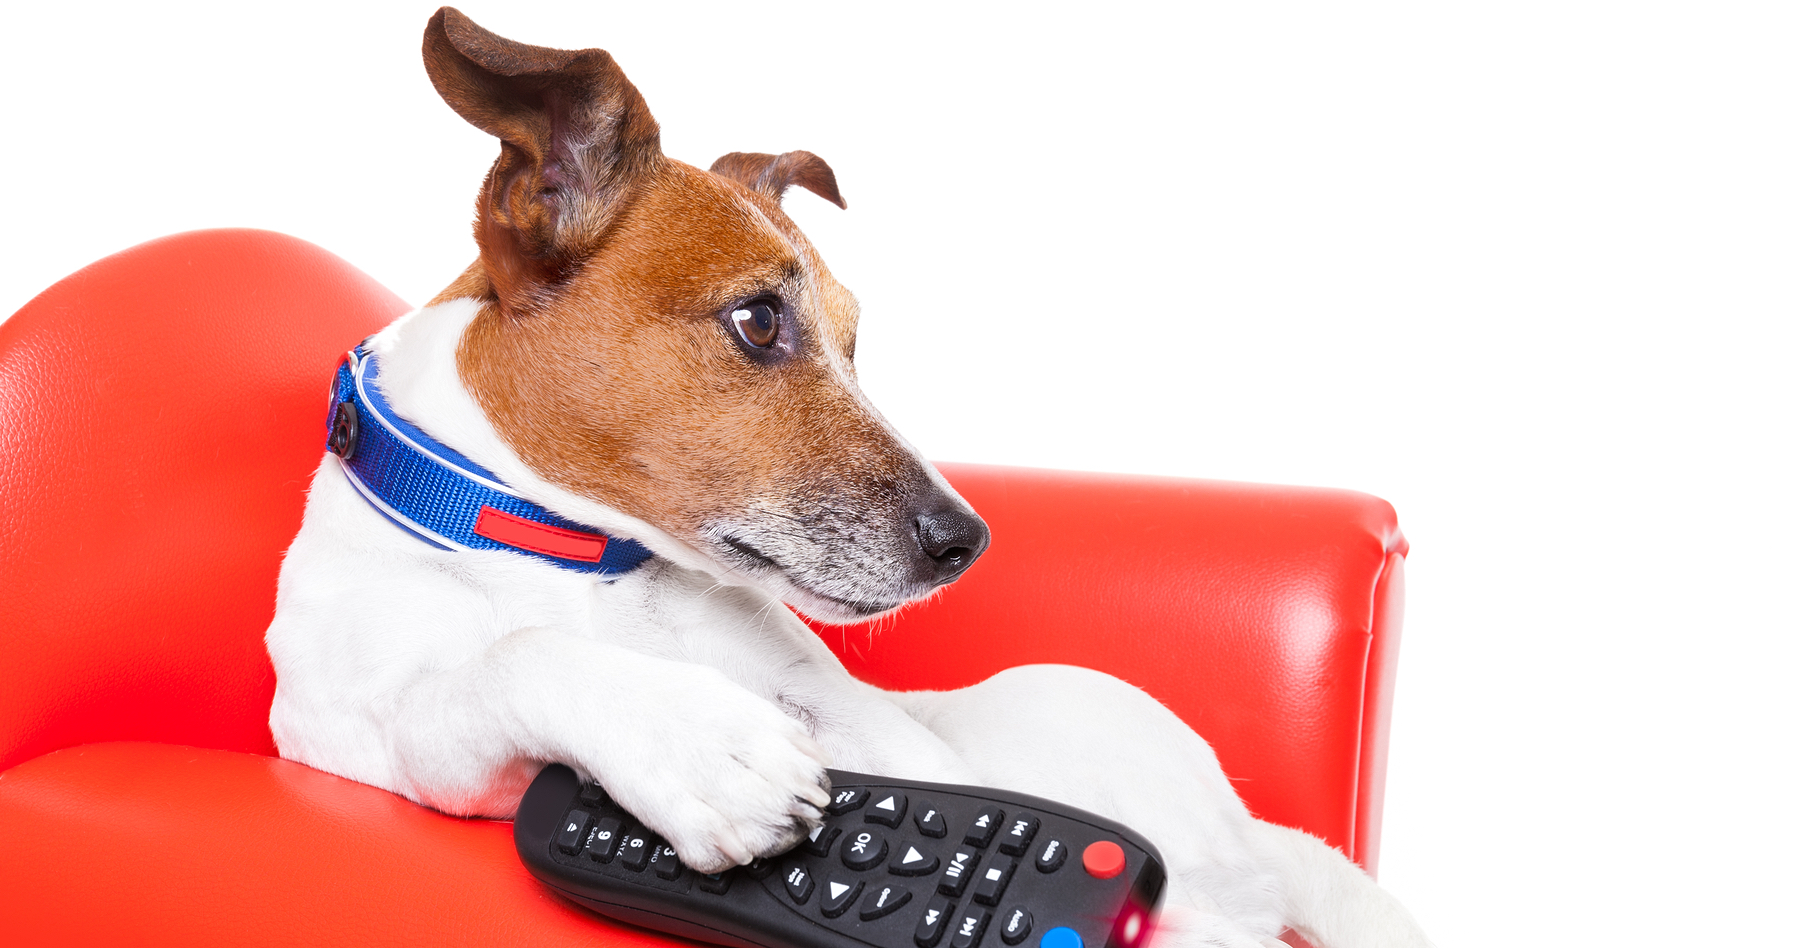 Devant la télé, s'ils savaient manier la télécommande, les chiens seraient des zappeurs invétérés. © Javier Brosch, Shutterstock